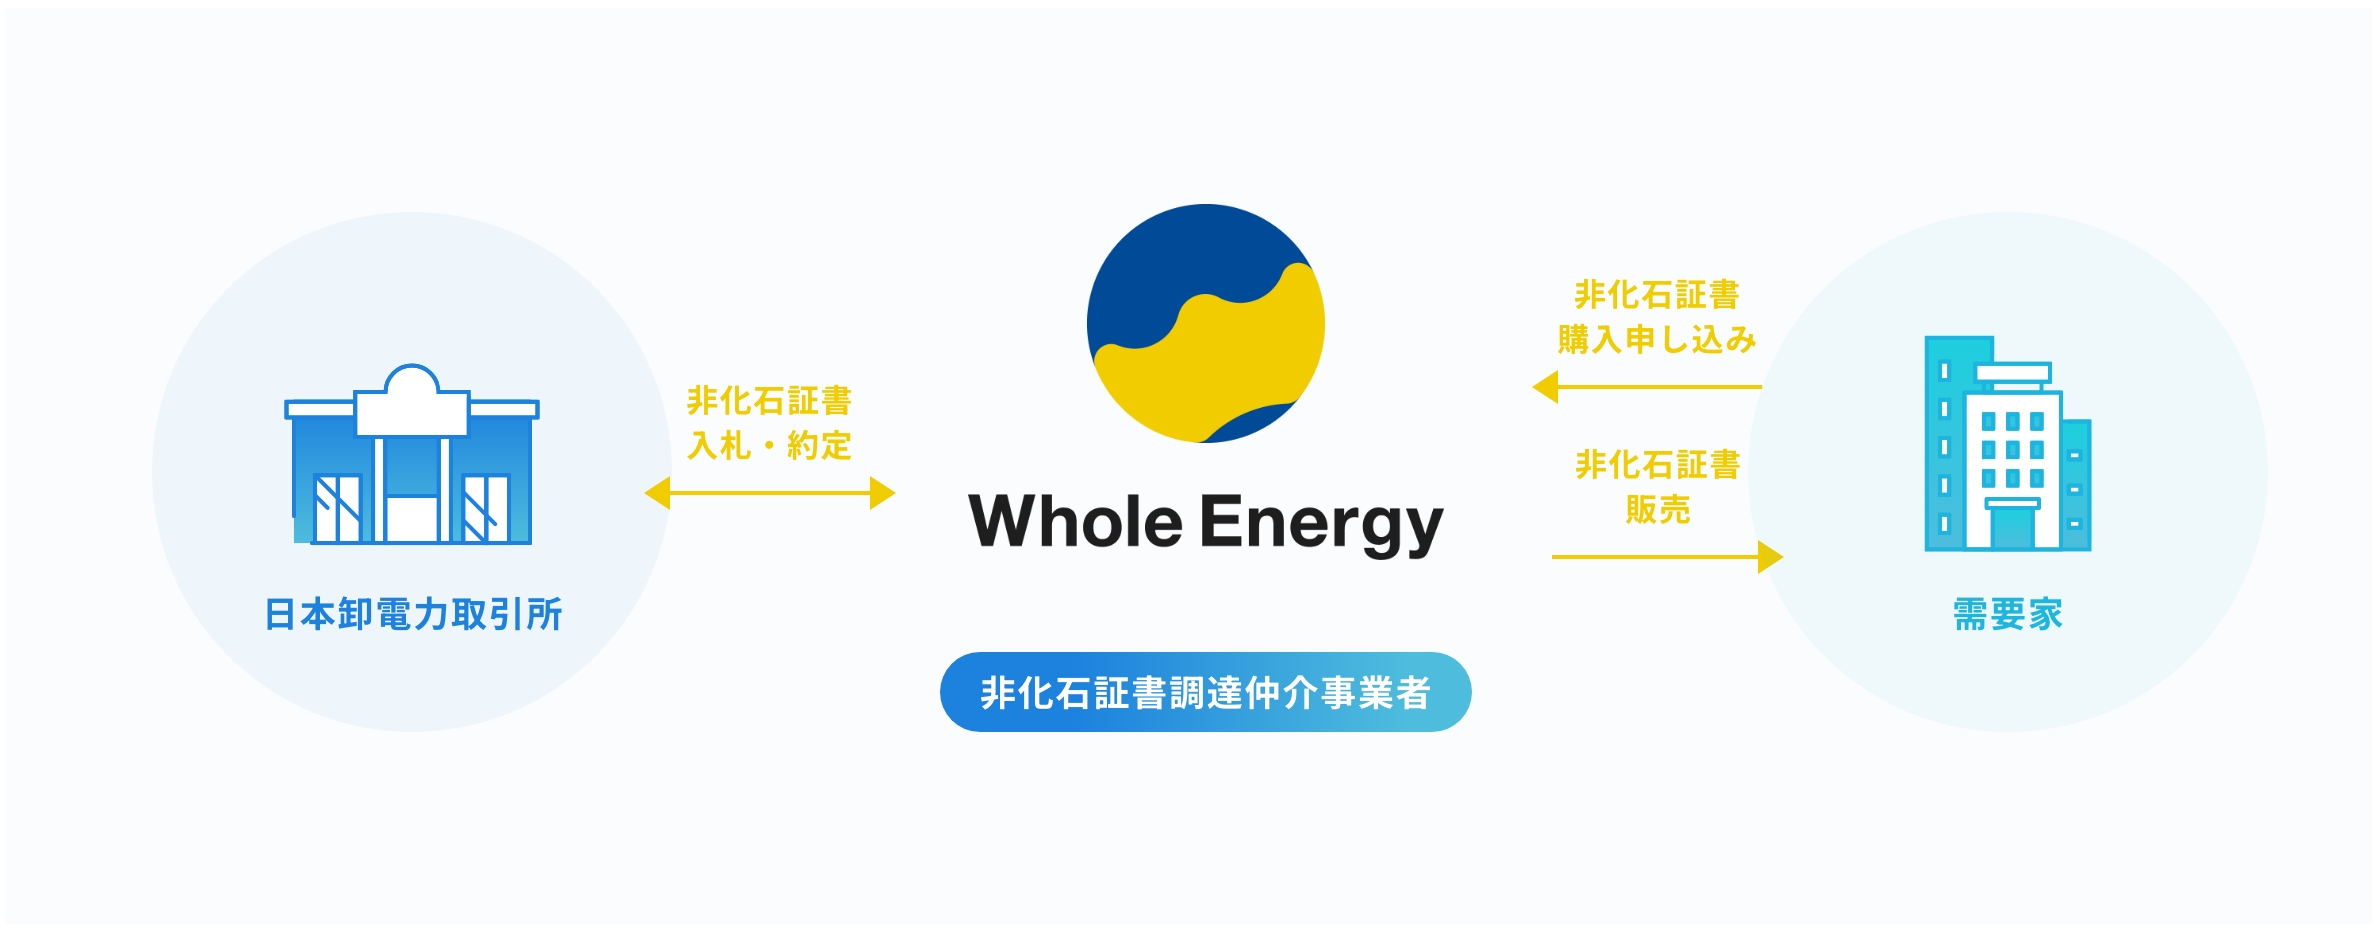 サービスのイメージ画像。非化石証書調達仲介事業者、日本卸電力取引所、需要家の関係